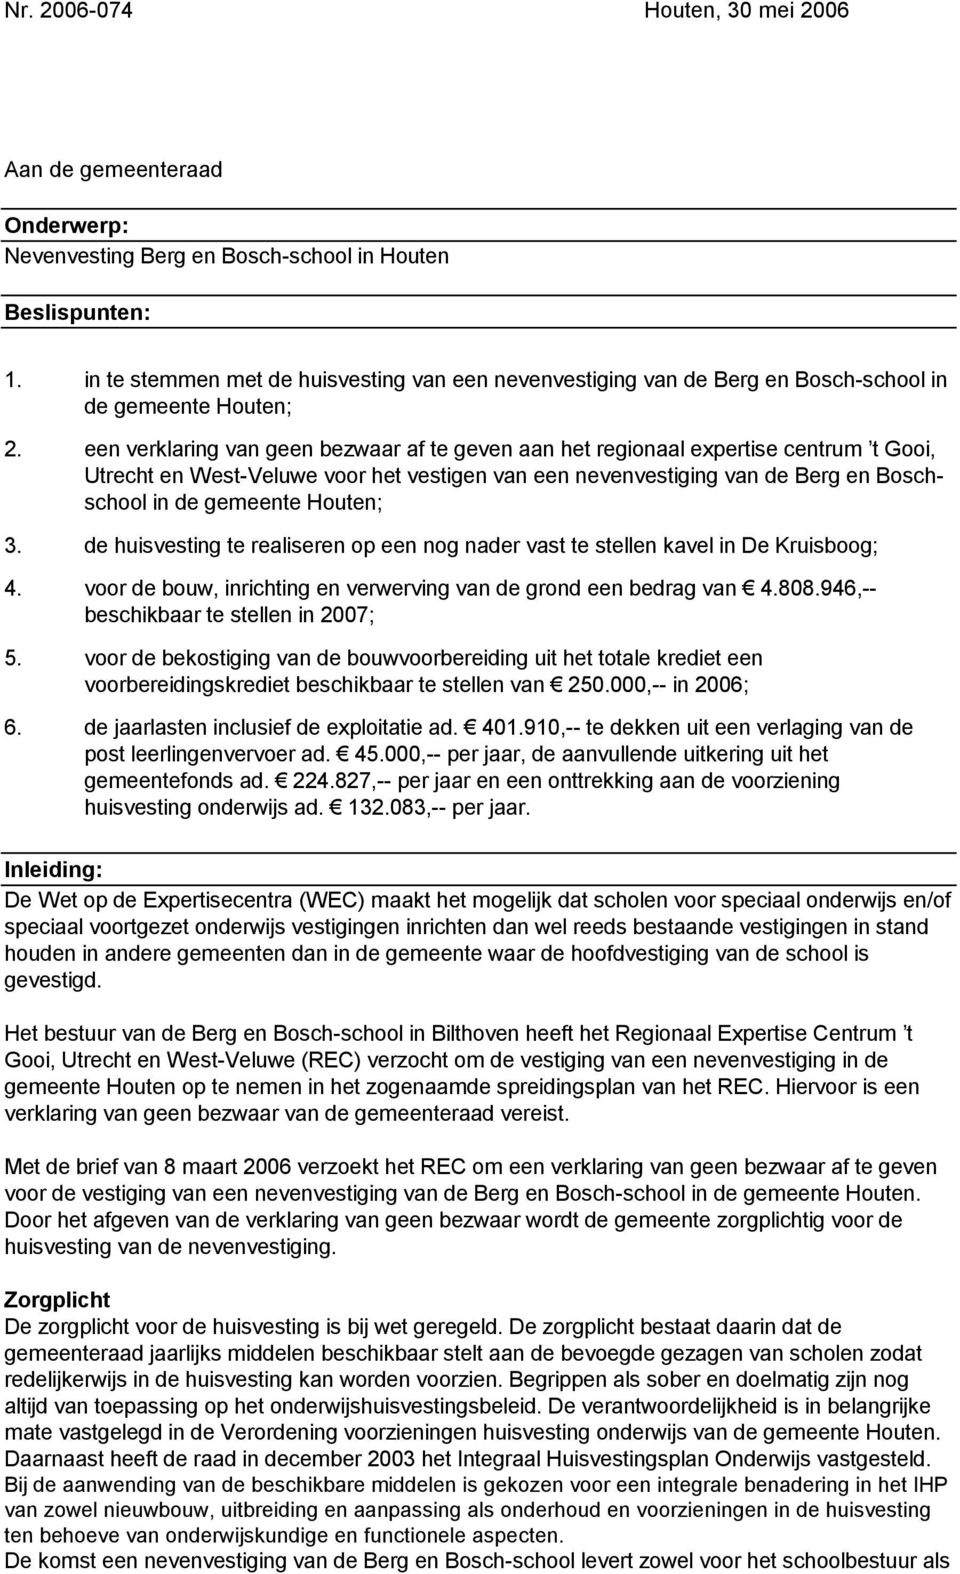 een verklaring van geen bezwaar af te geven aan het regionaal expertise centrum t Gooi, Utrecht en West-Veluwe voor het vestigen van een nevenvestiging van de Berg en Boschschool in de gemeente